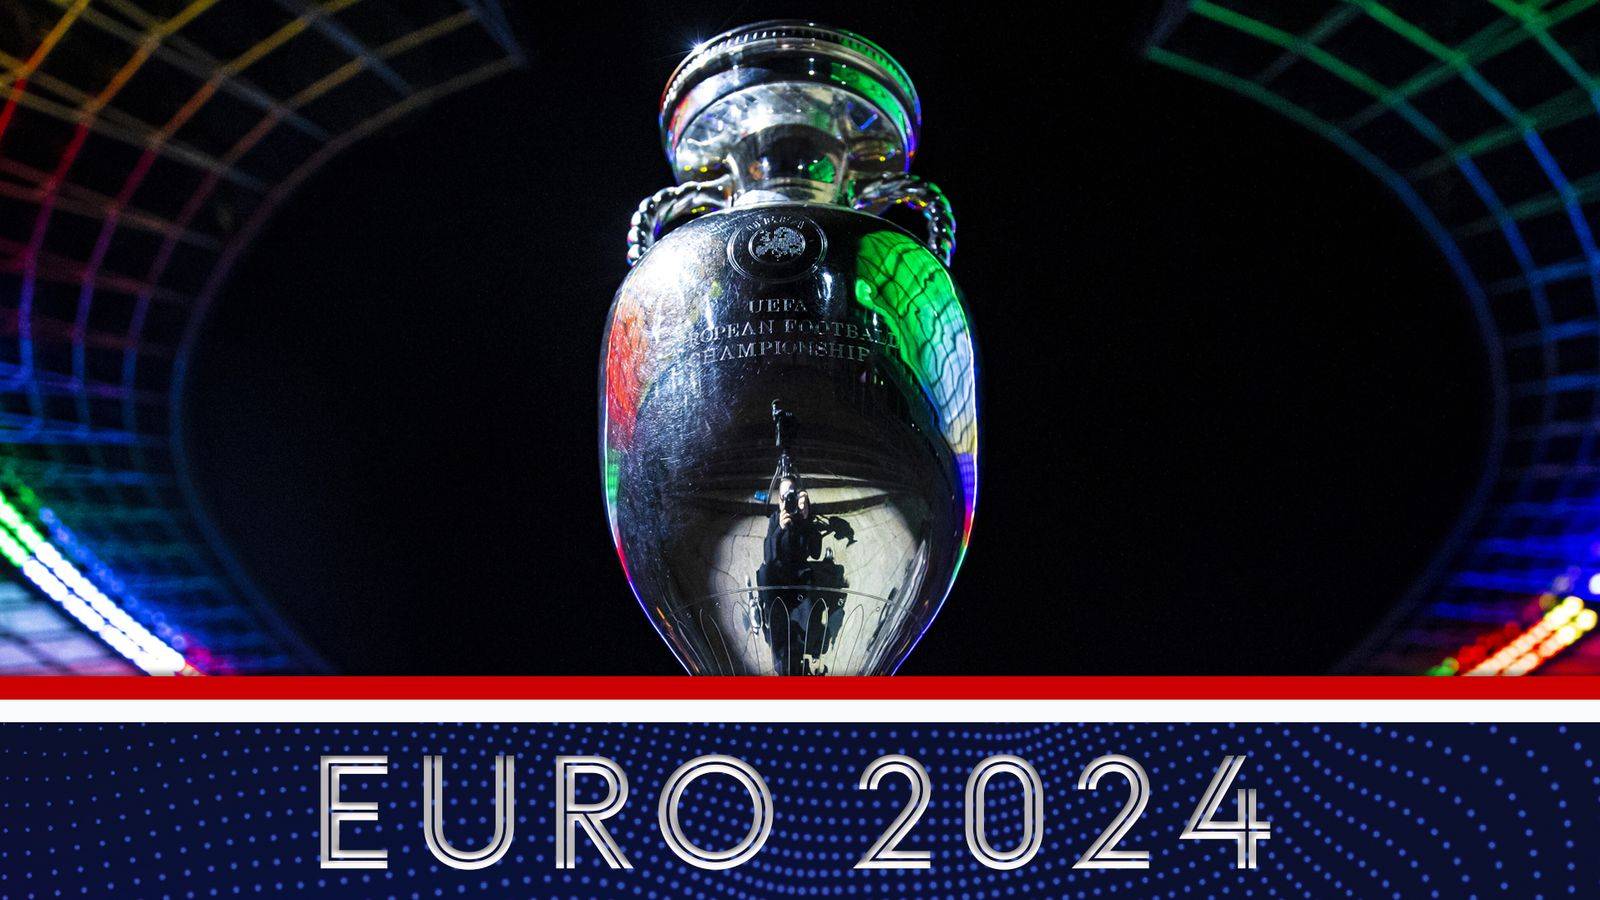 2024-06-26 欧洲杯 《你懂球吗》董路李欣谈淘汰赛格局